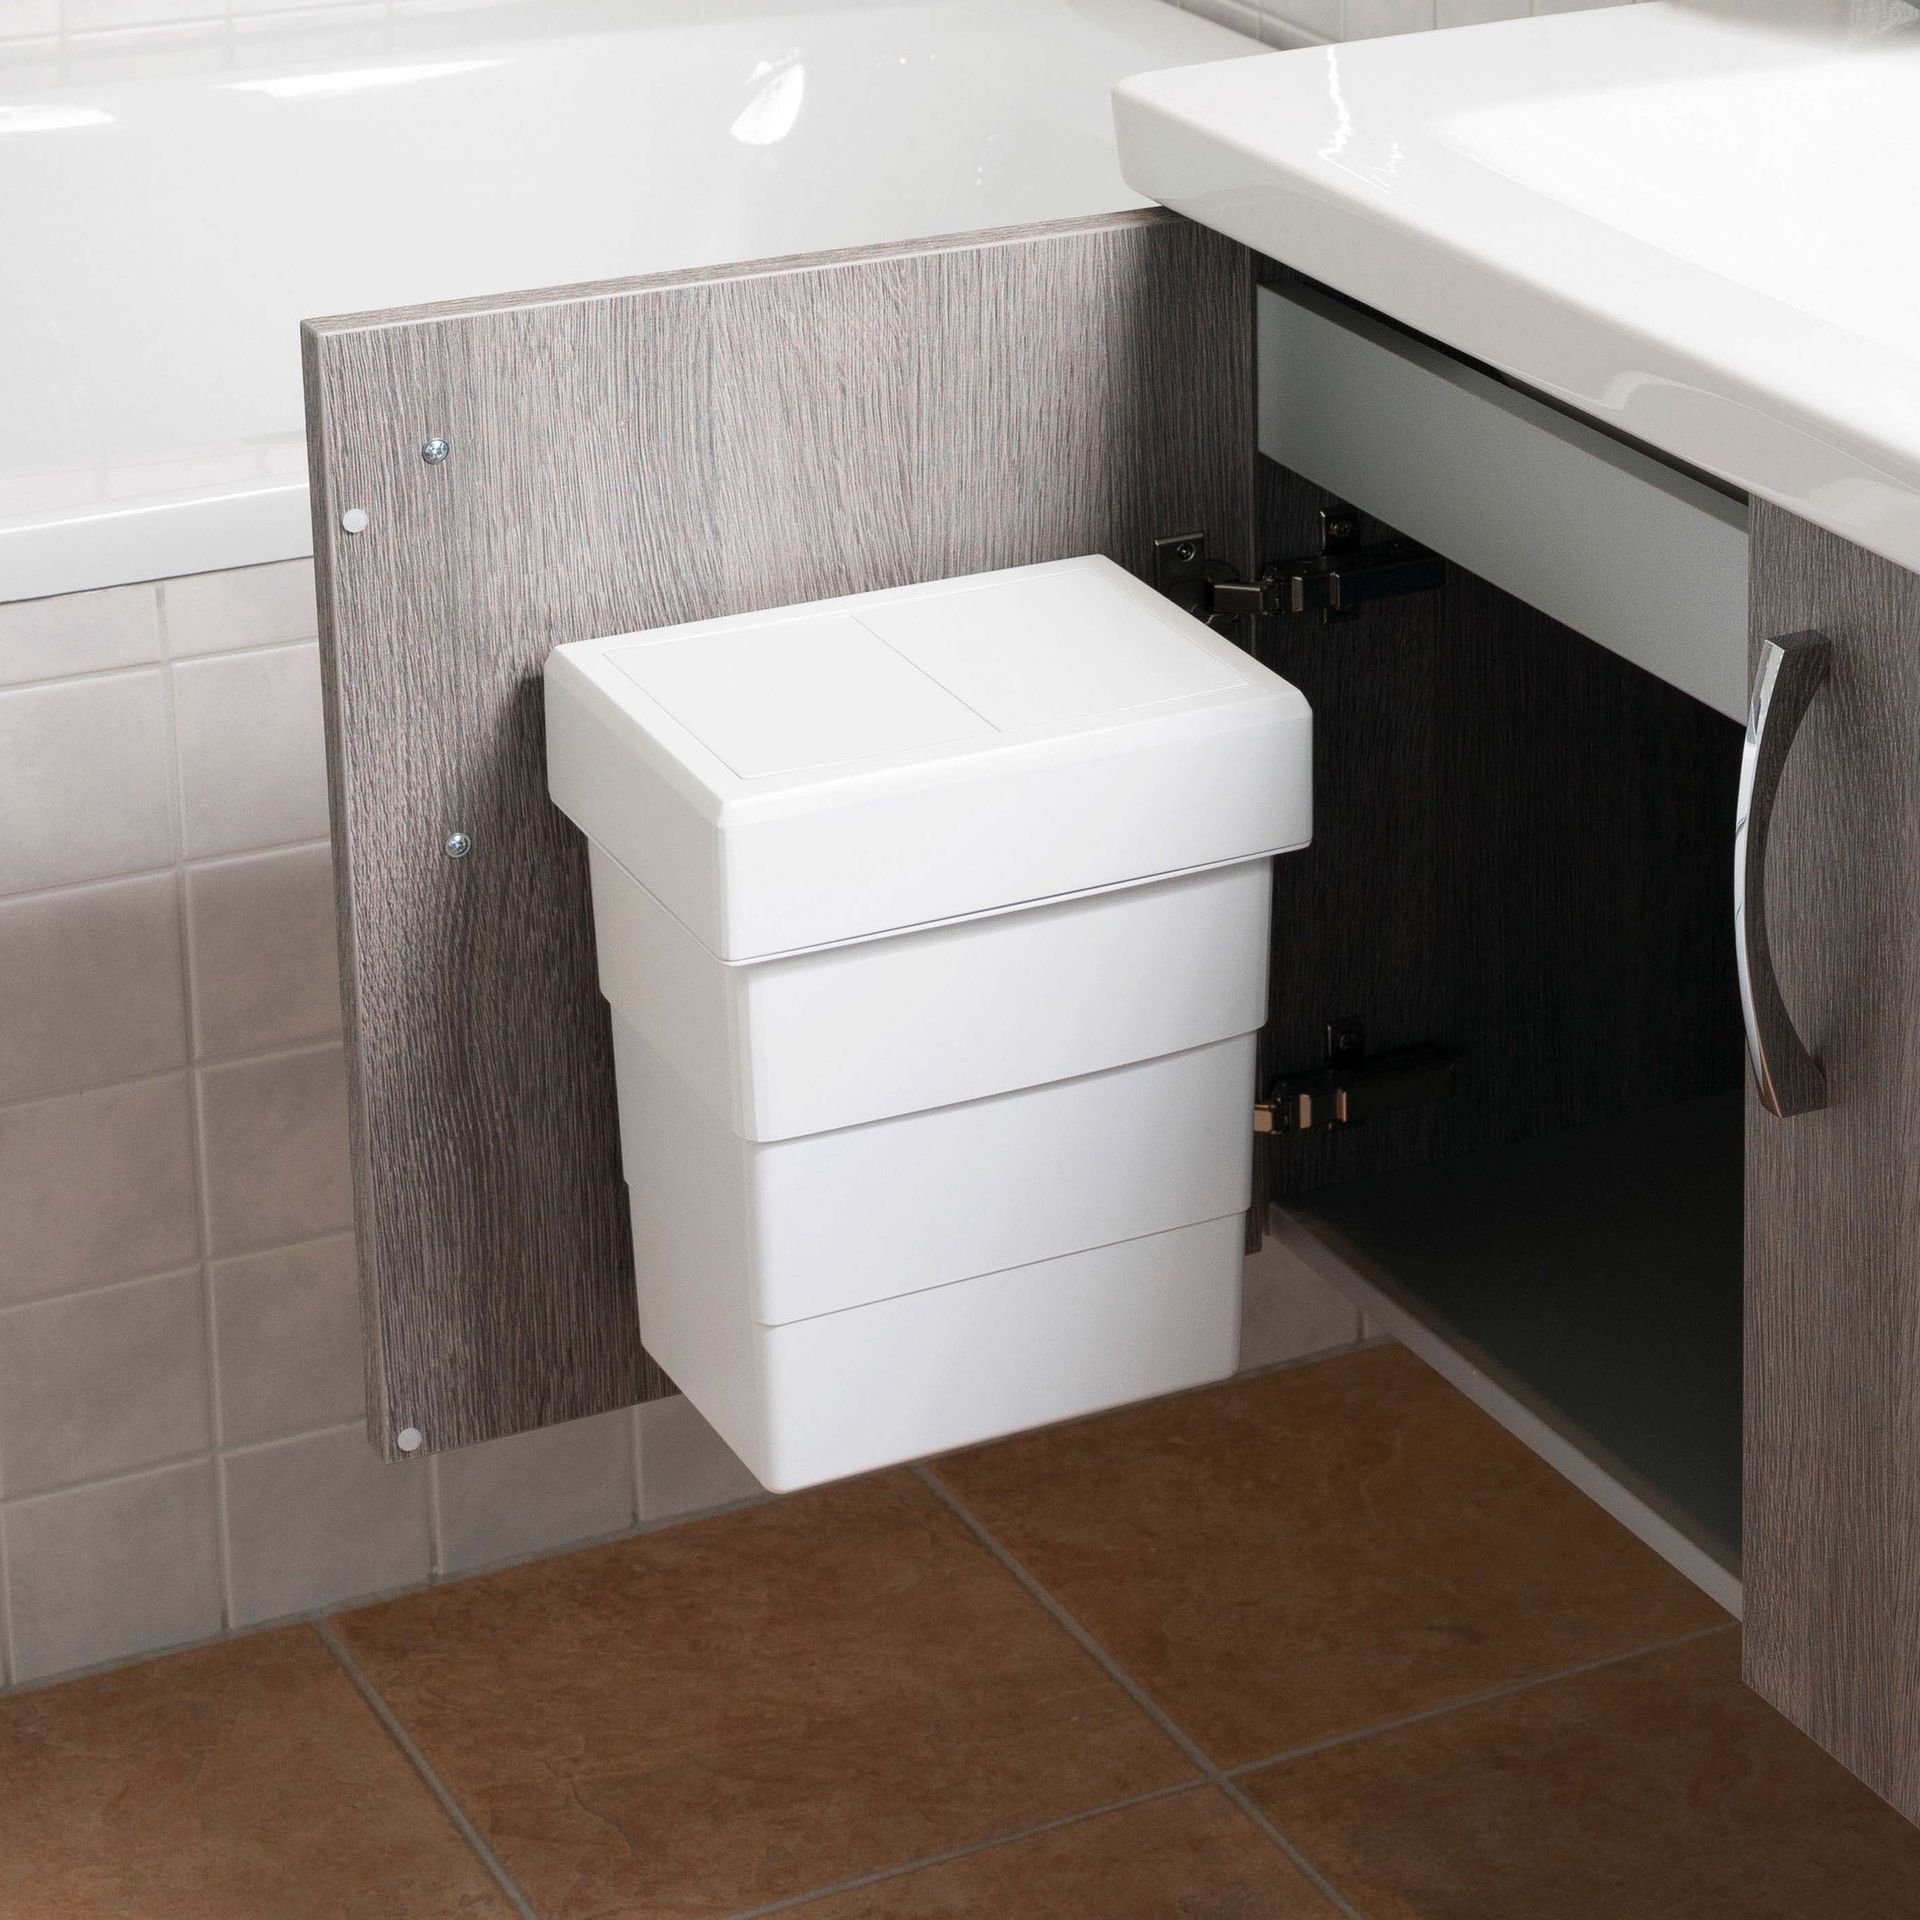 Встраиваемое Ведро для Мусора 7л Bathroom-Bin Hailo 3215-25 крышка с автоматическим закрыванием